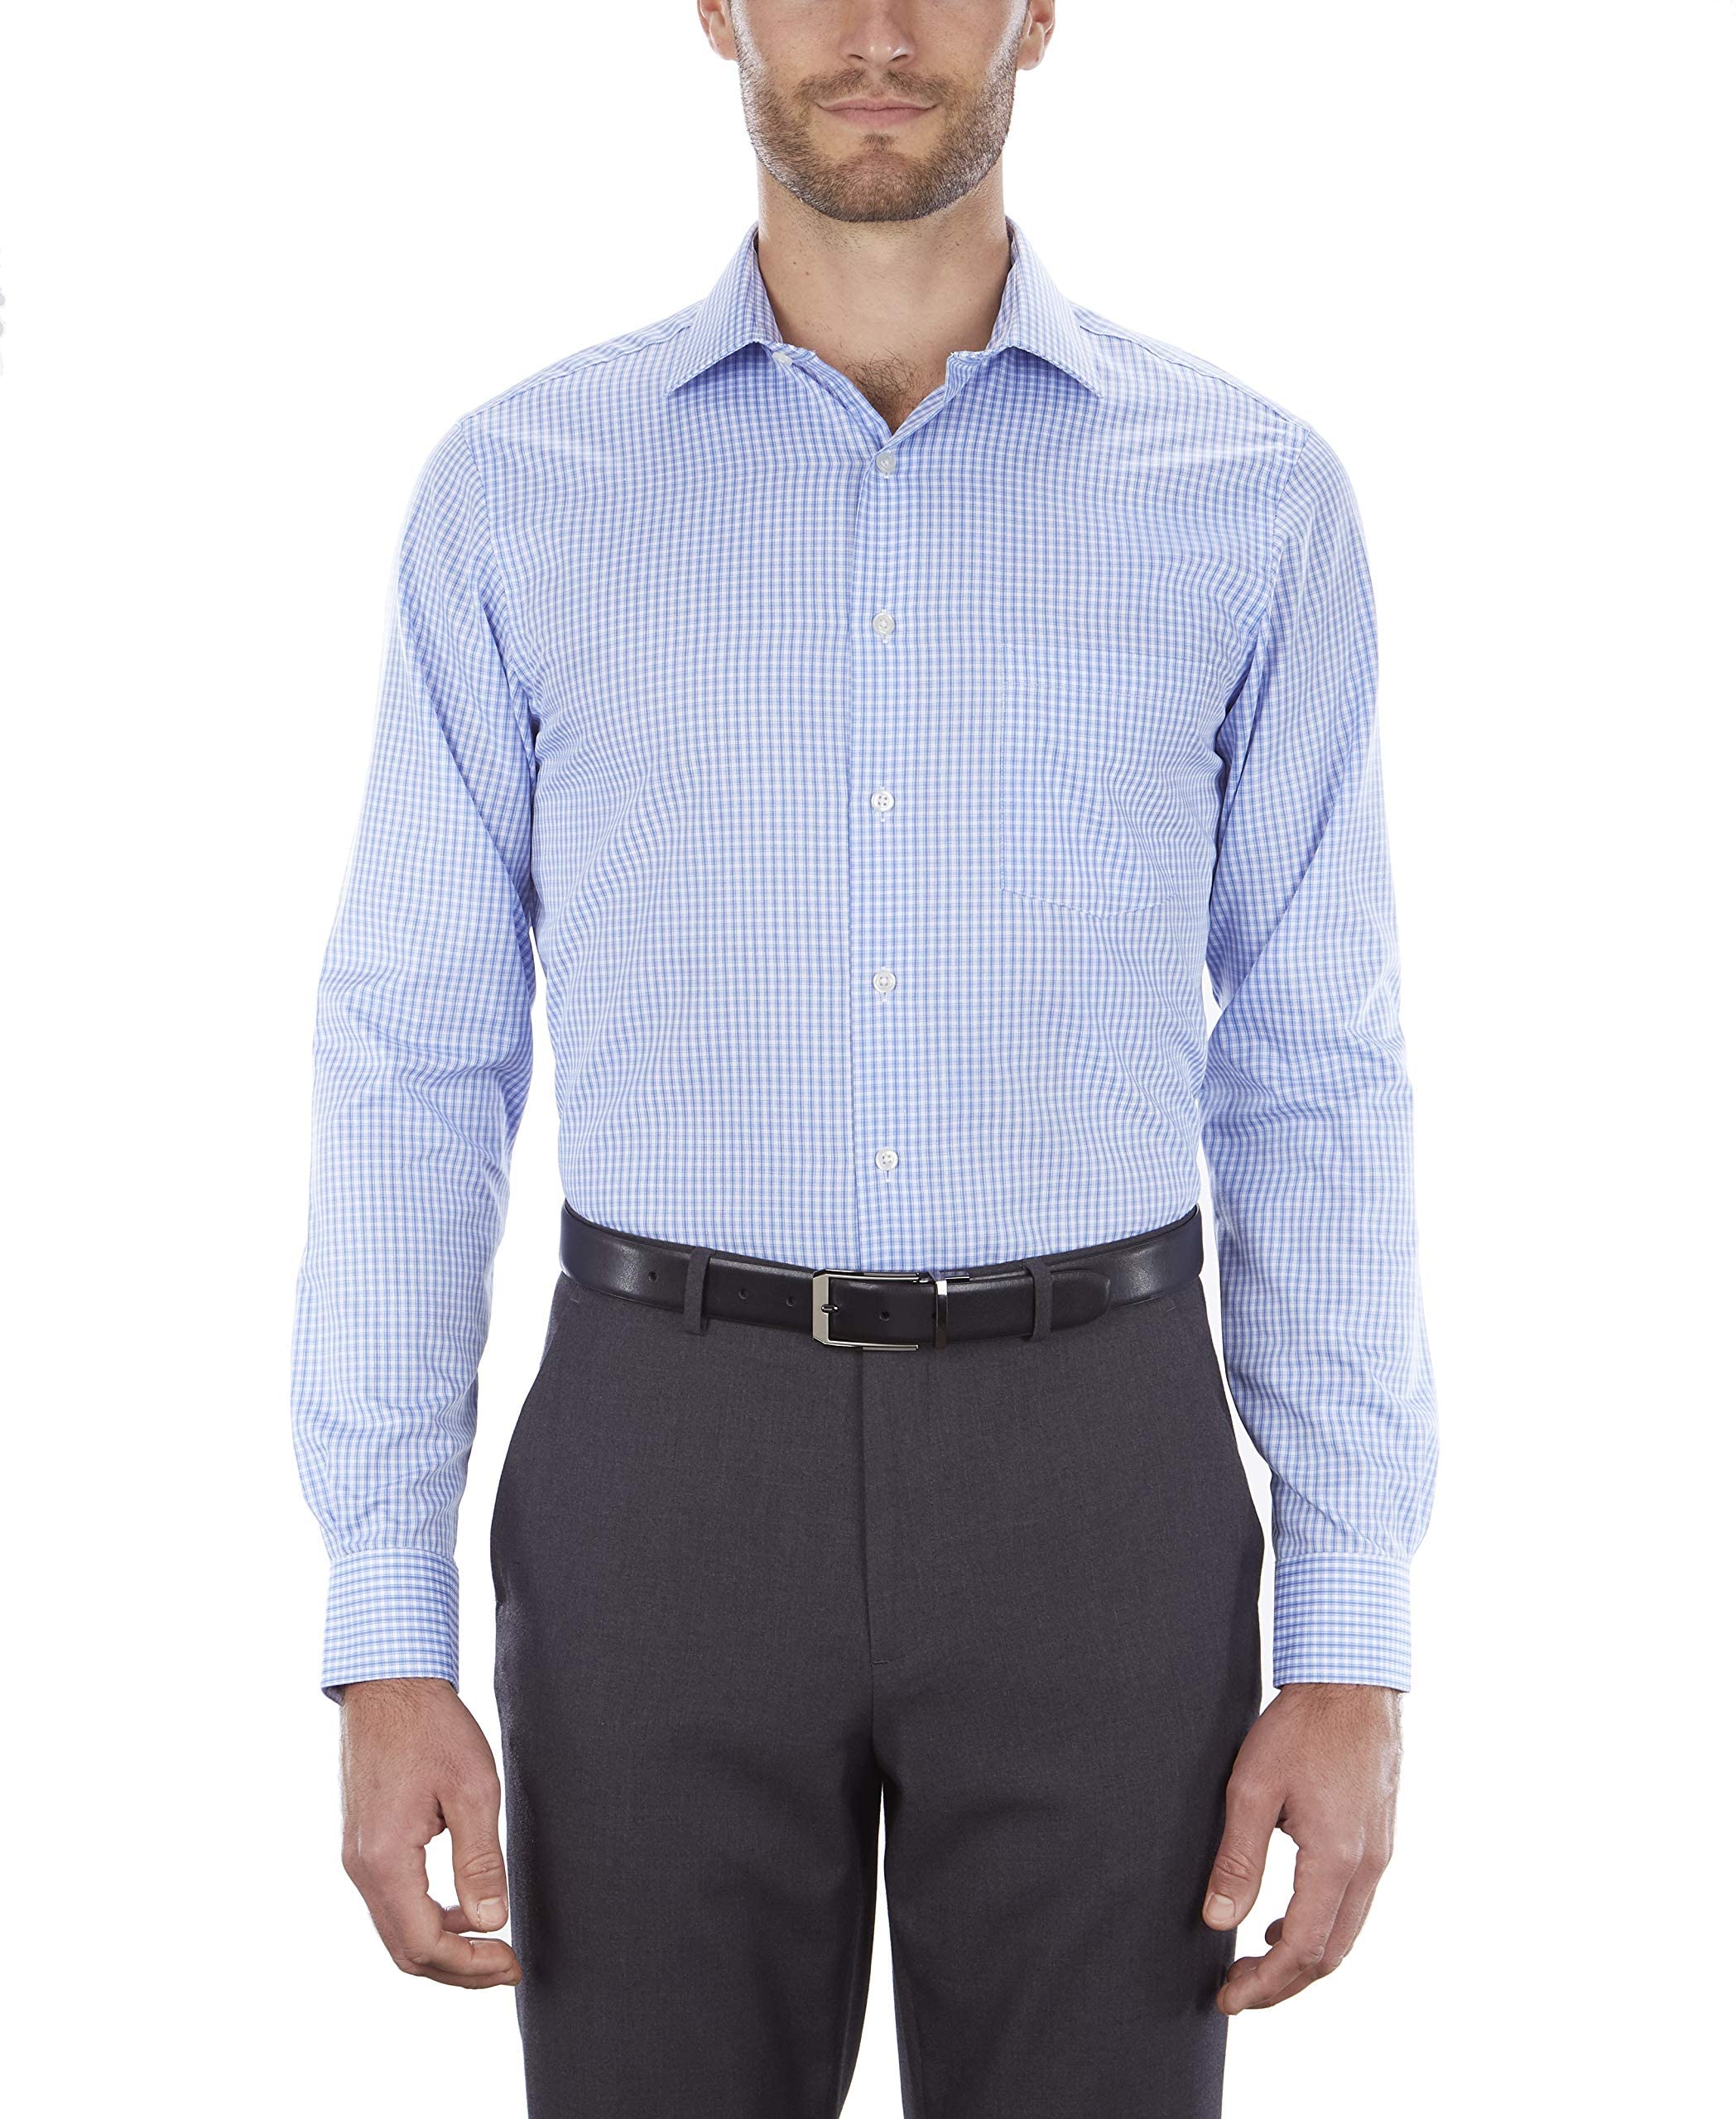 Van Heusen Men's Dress Shirt Regular Fit Flex Collar Check